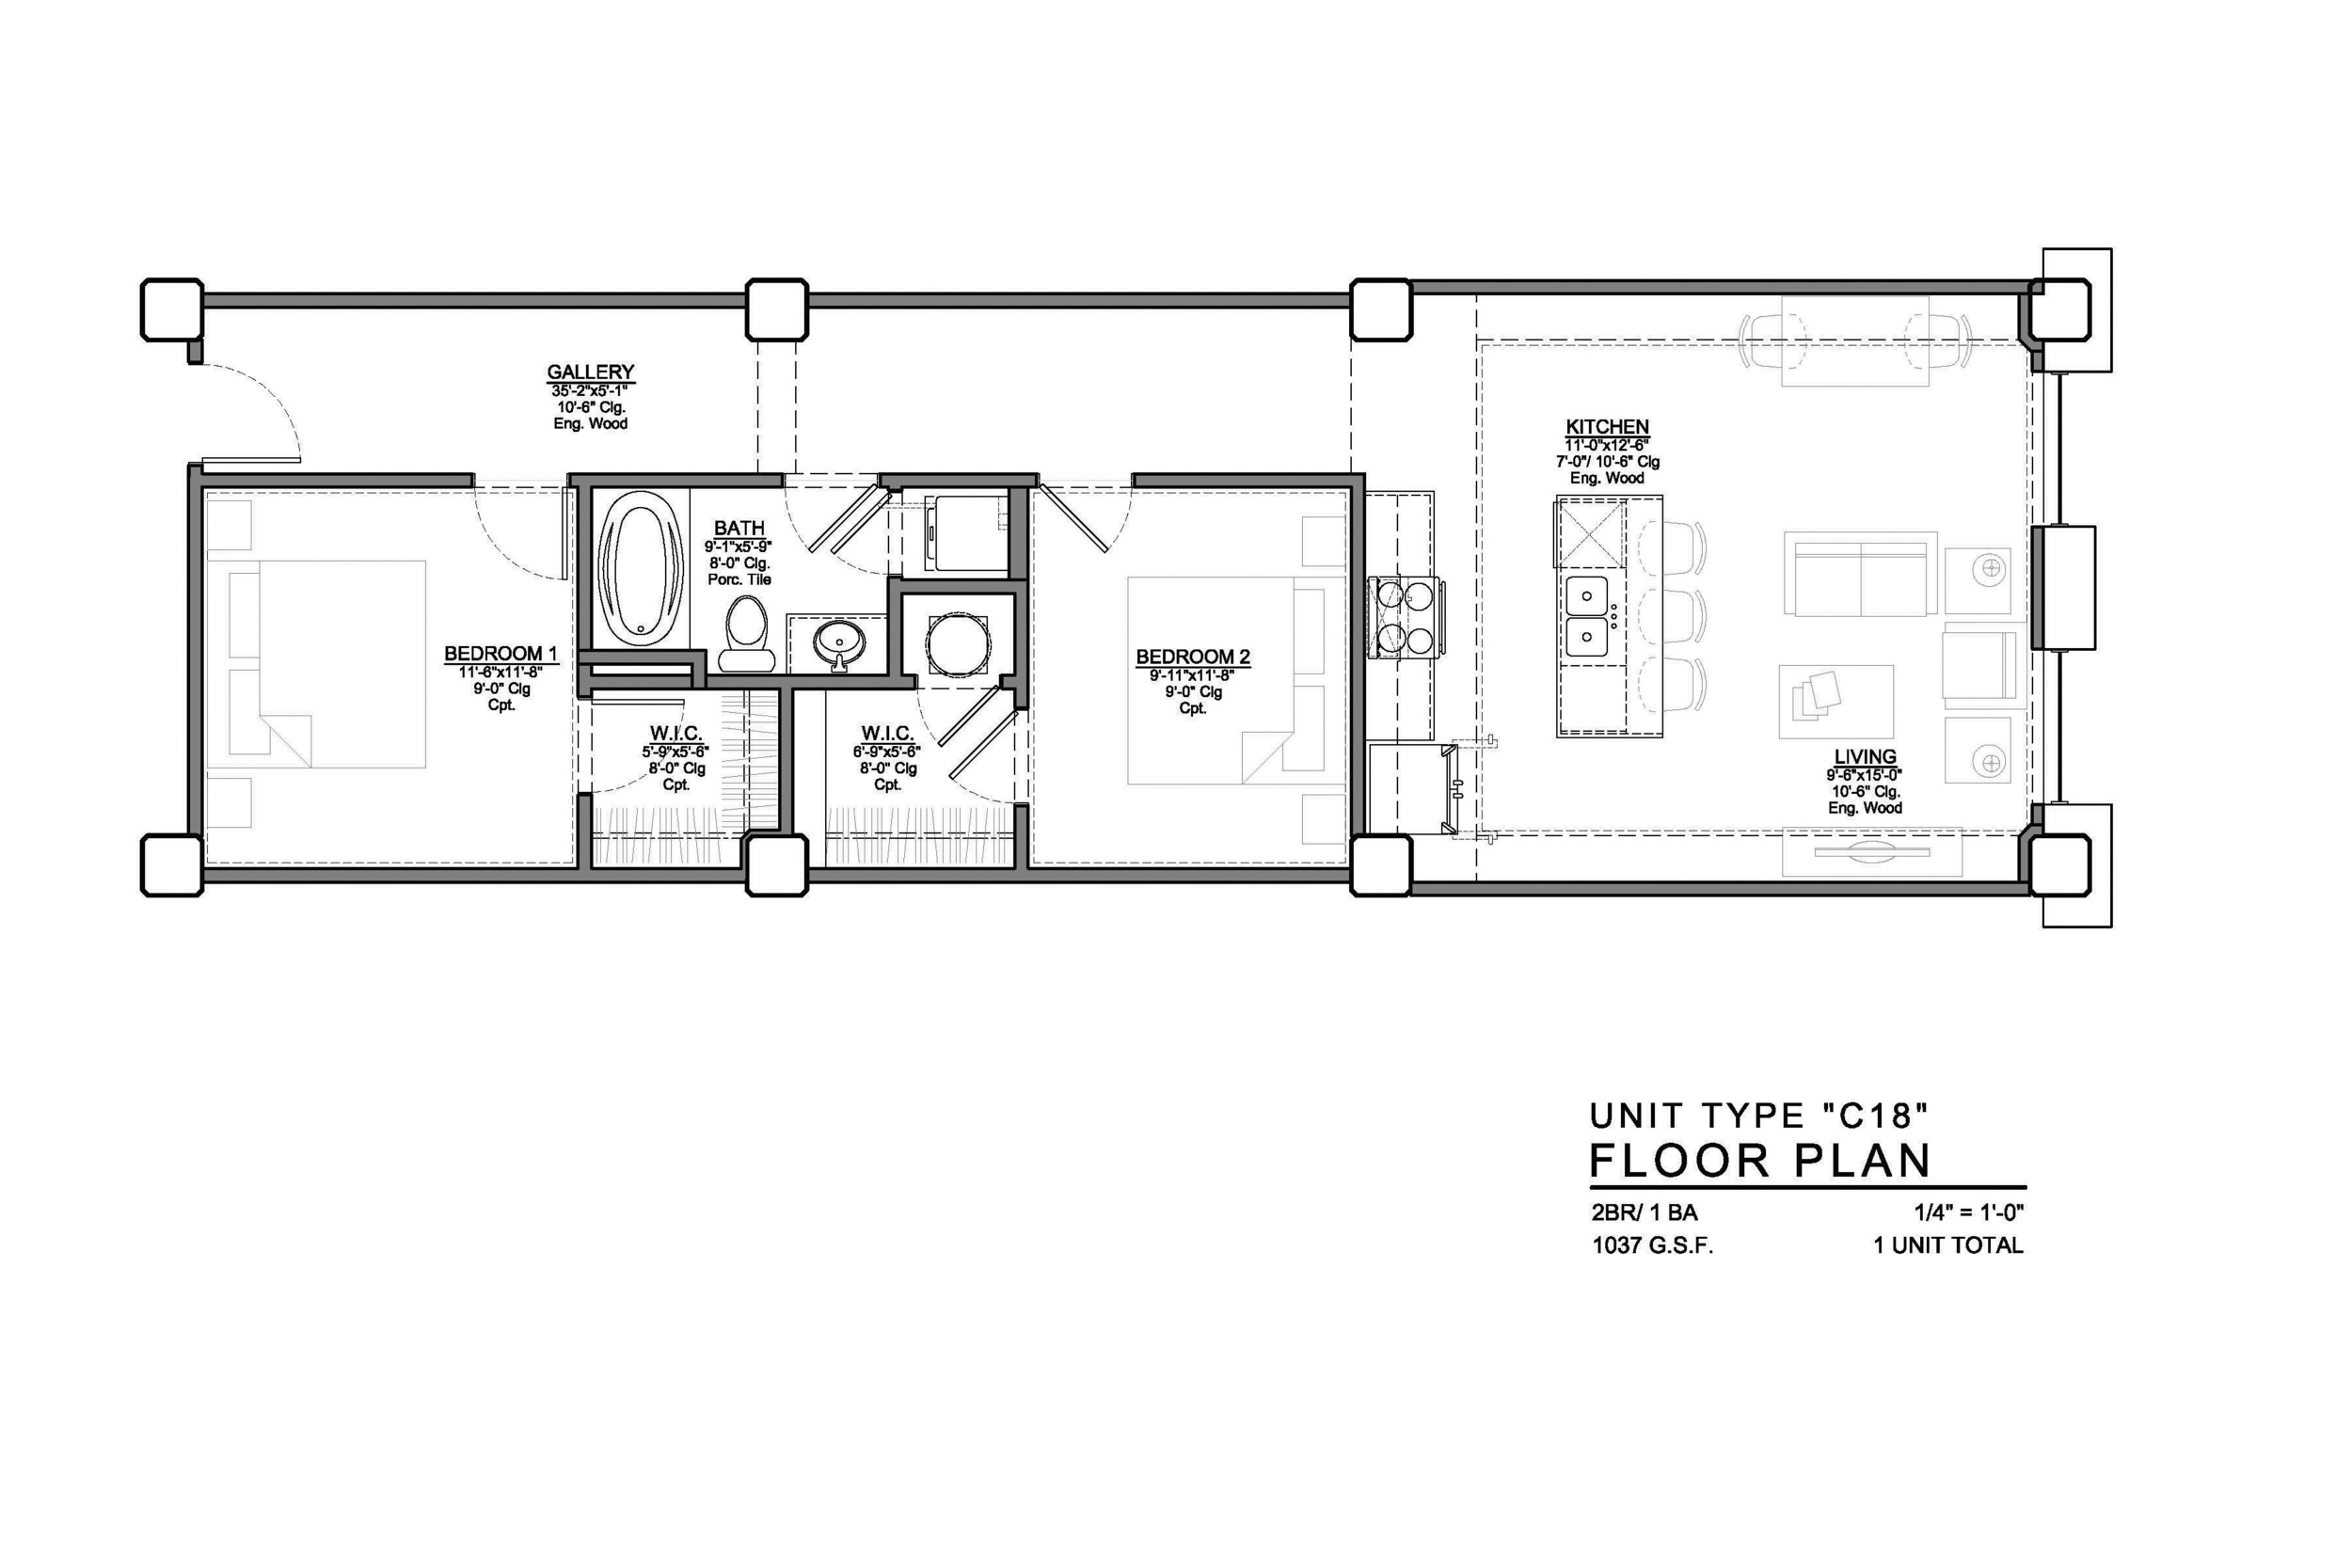 C18 FLOOR PLAN: 2 BEDROOM / 1 BATH